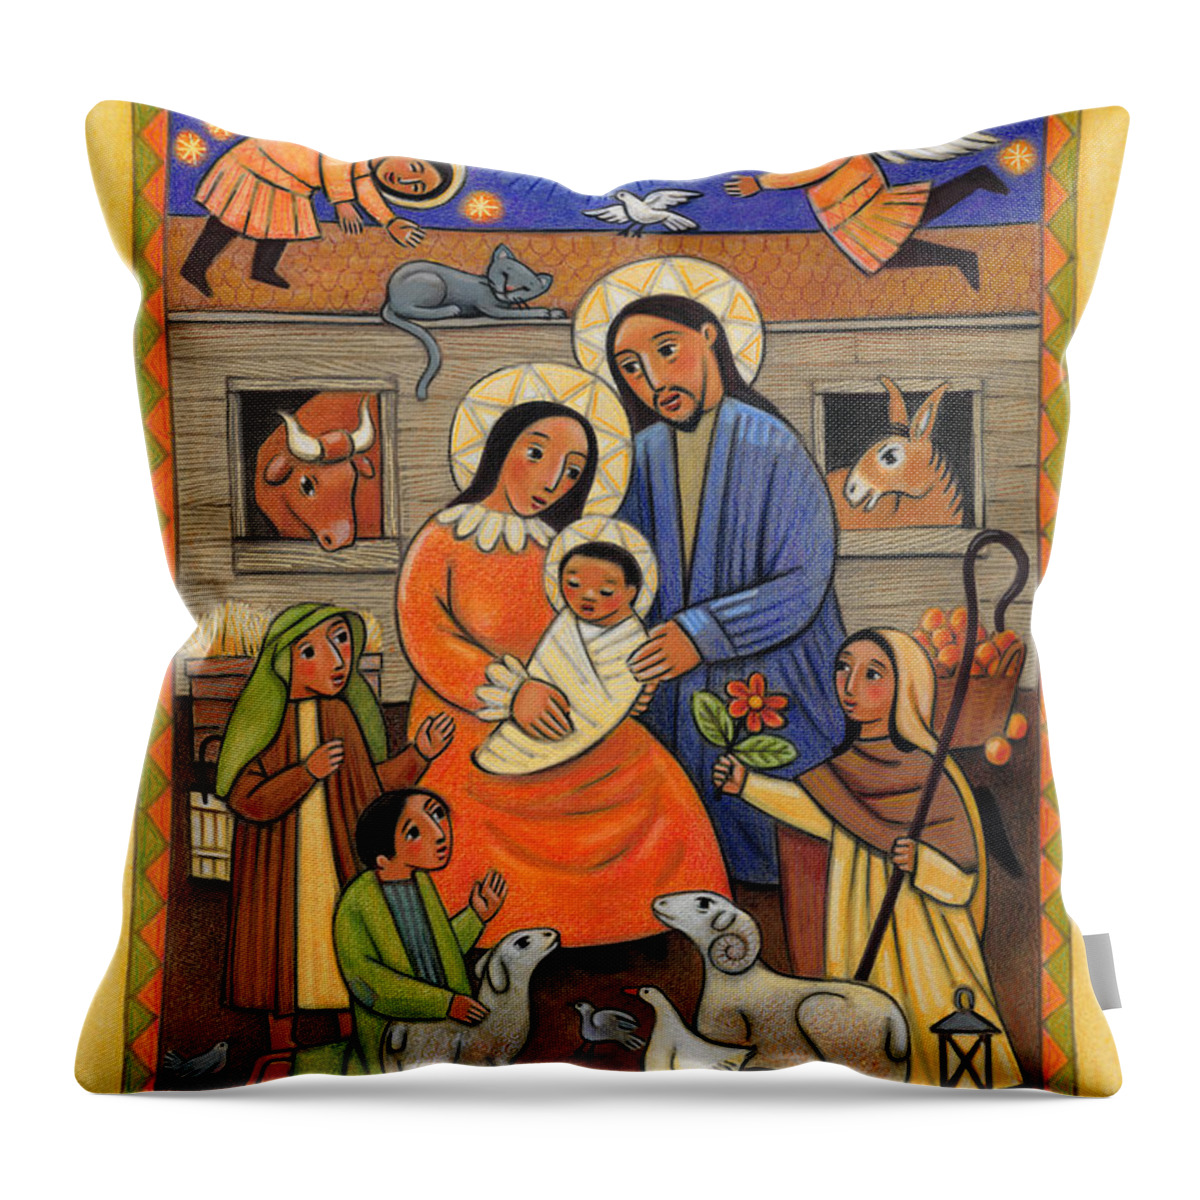 Folk Nativity Throw Pillow featuring the painting Folk Nativity - JLFON by Julie Lonneman